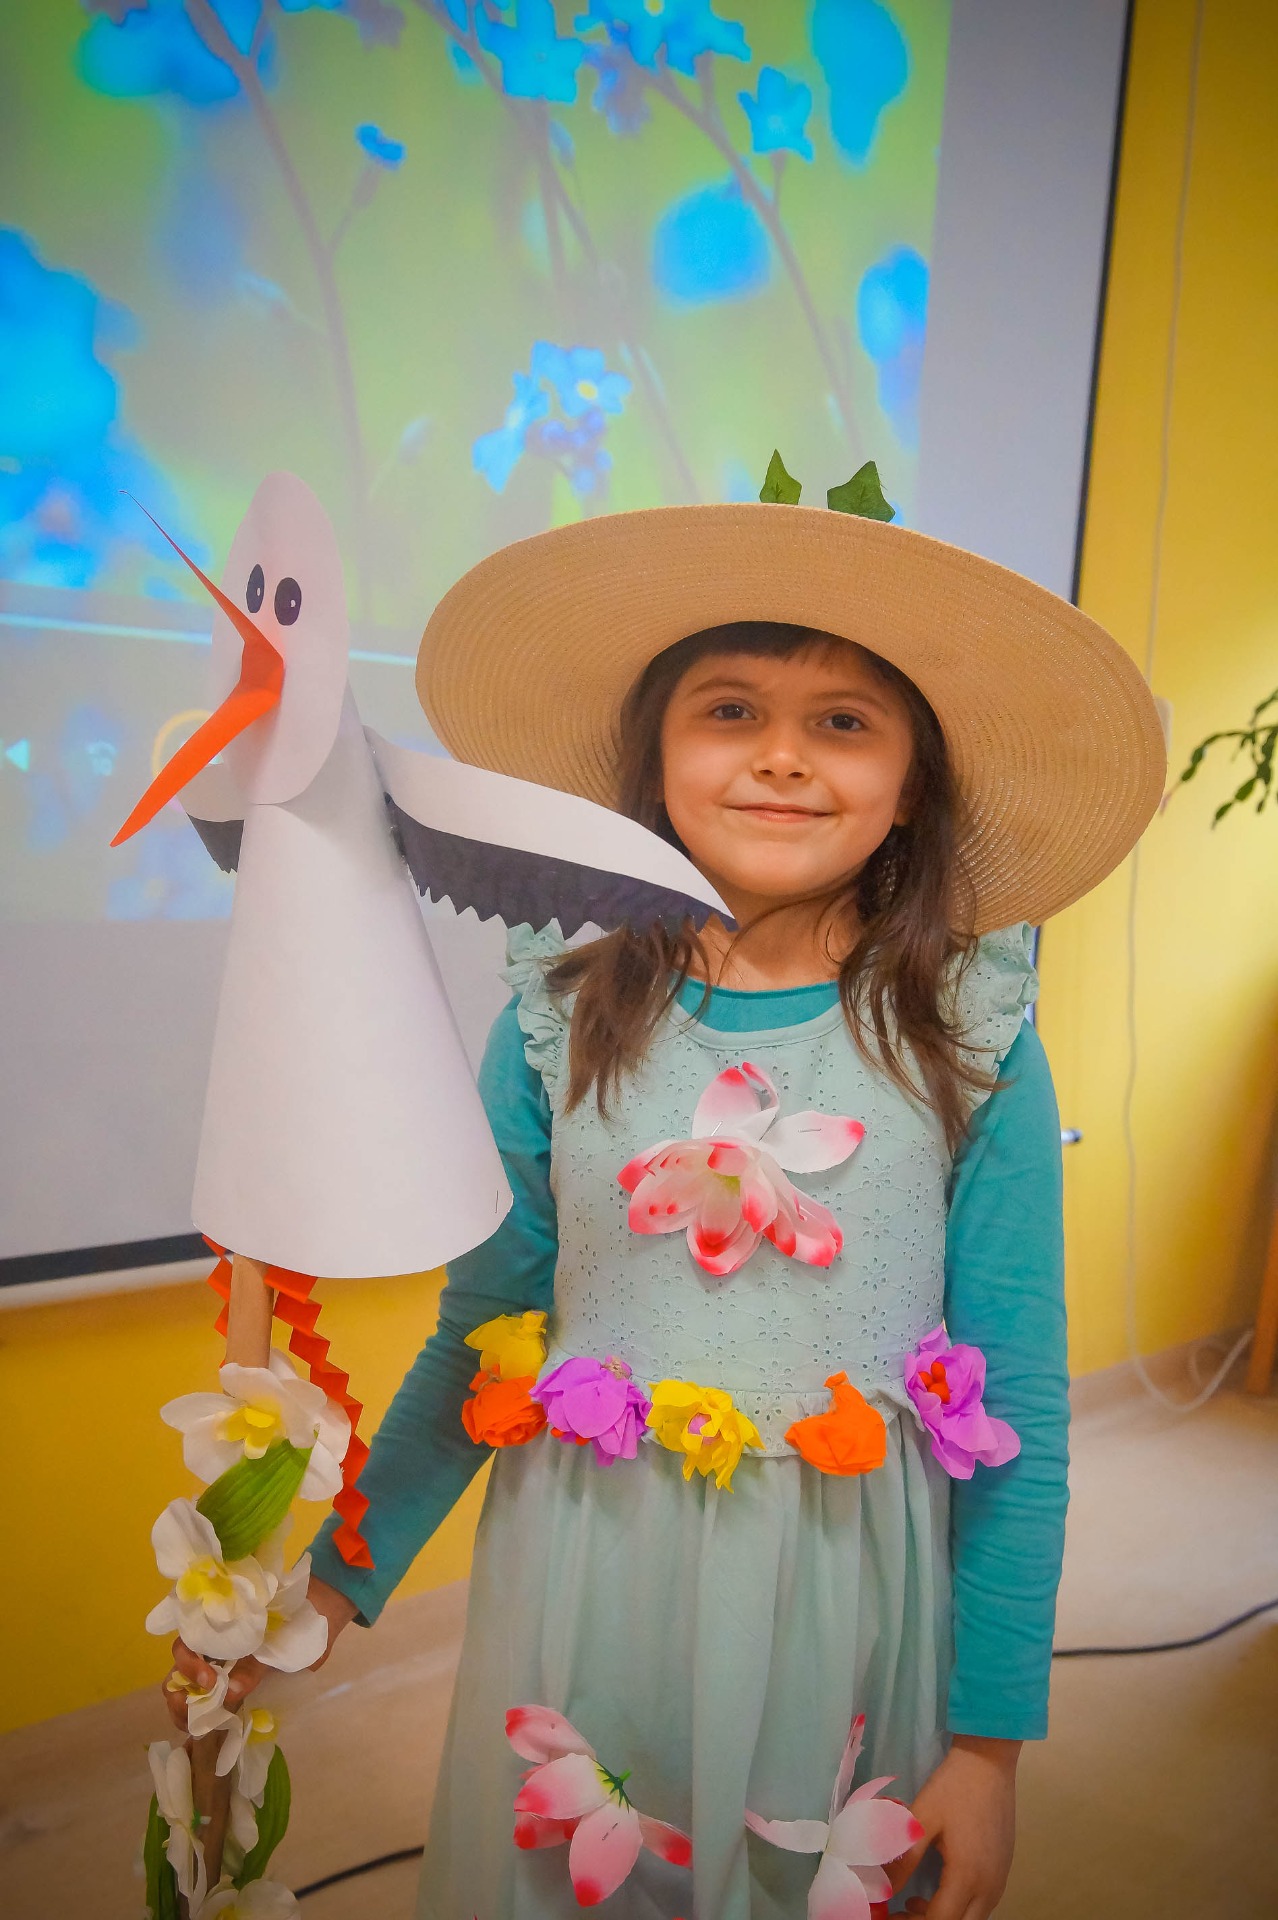 Mała dziewczynka w kapeluszu przebrana za wiosnę, w ręku trzyma kij z papierowym bocianem